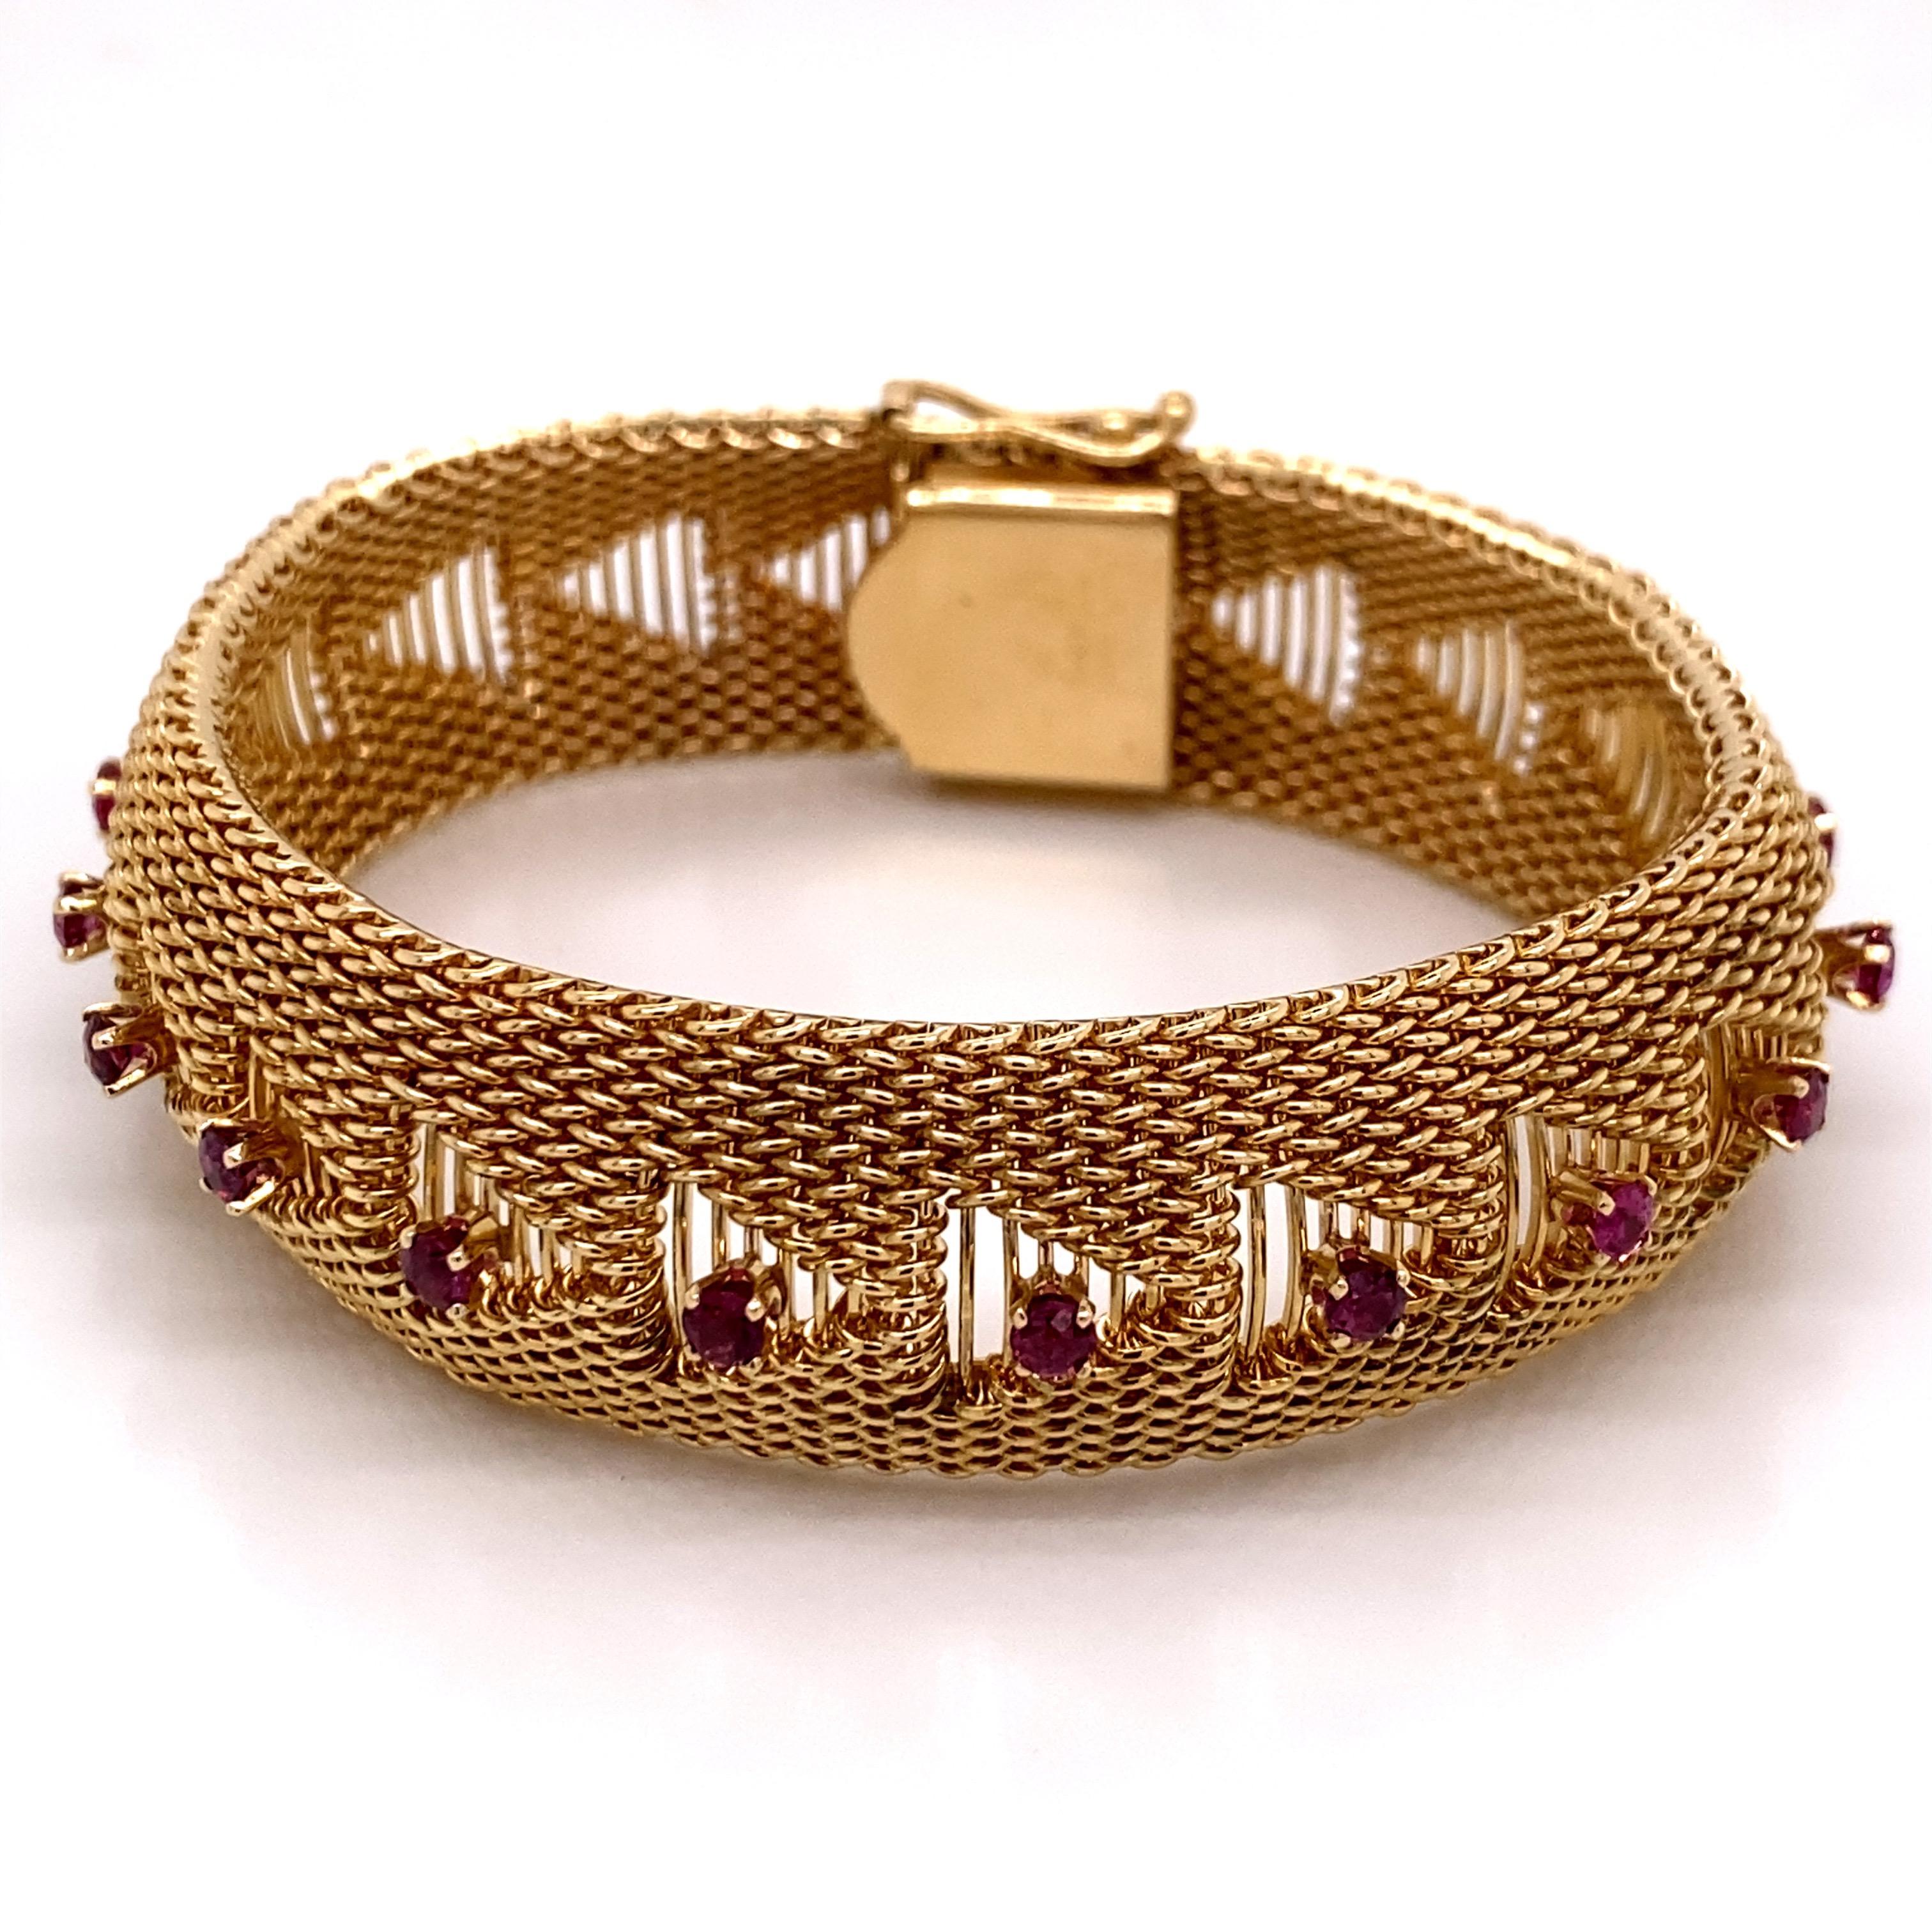 Vintage 1960s Bracelet en or jaune 14K avec fleurs en émail et rubis - Le bracelet mesure 7 pouces de long et 0,6 pouce de large au centre. Les 12 rubis sont sertis dans des têtes à 4 griffes et pèsent environ 1,25ct. Le bracelet est doté d'un